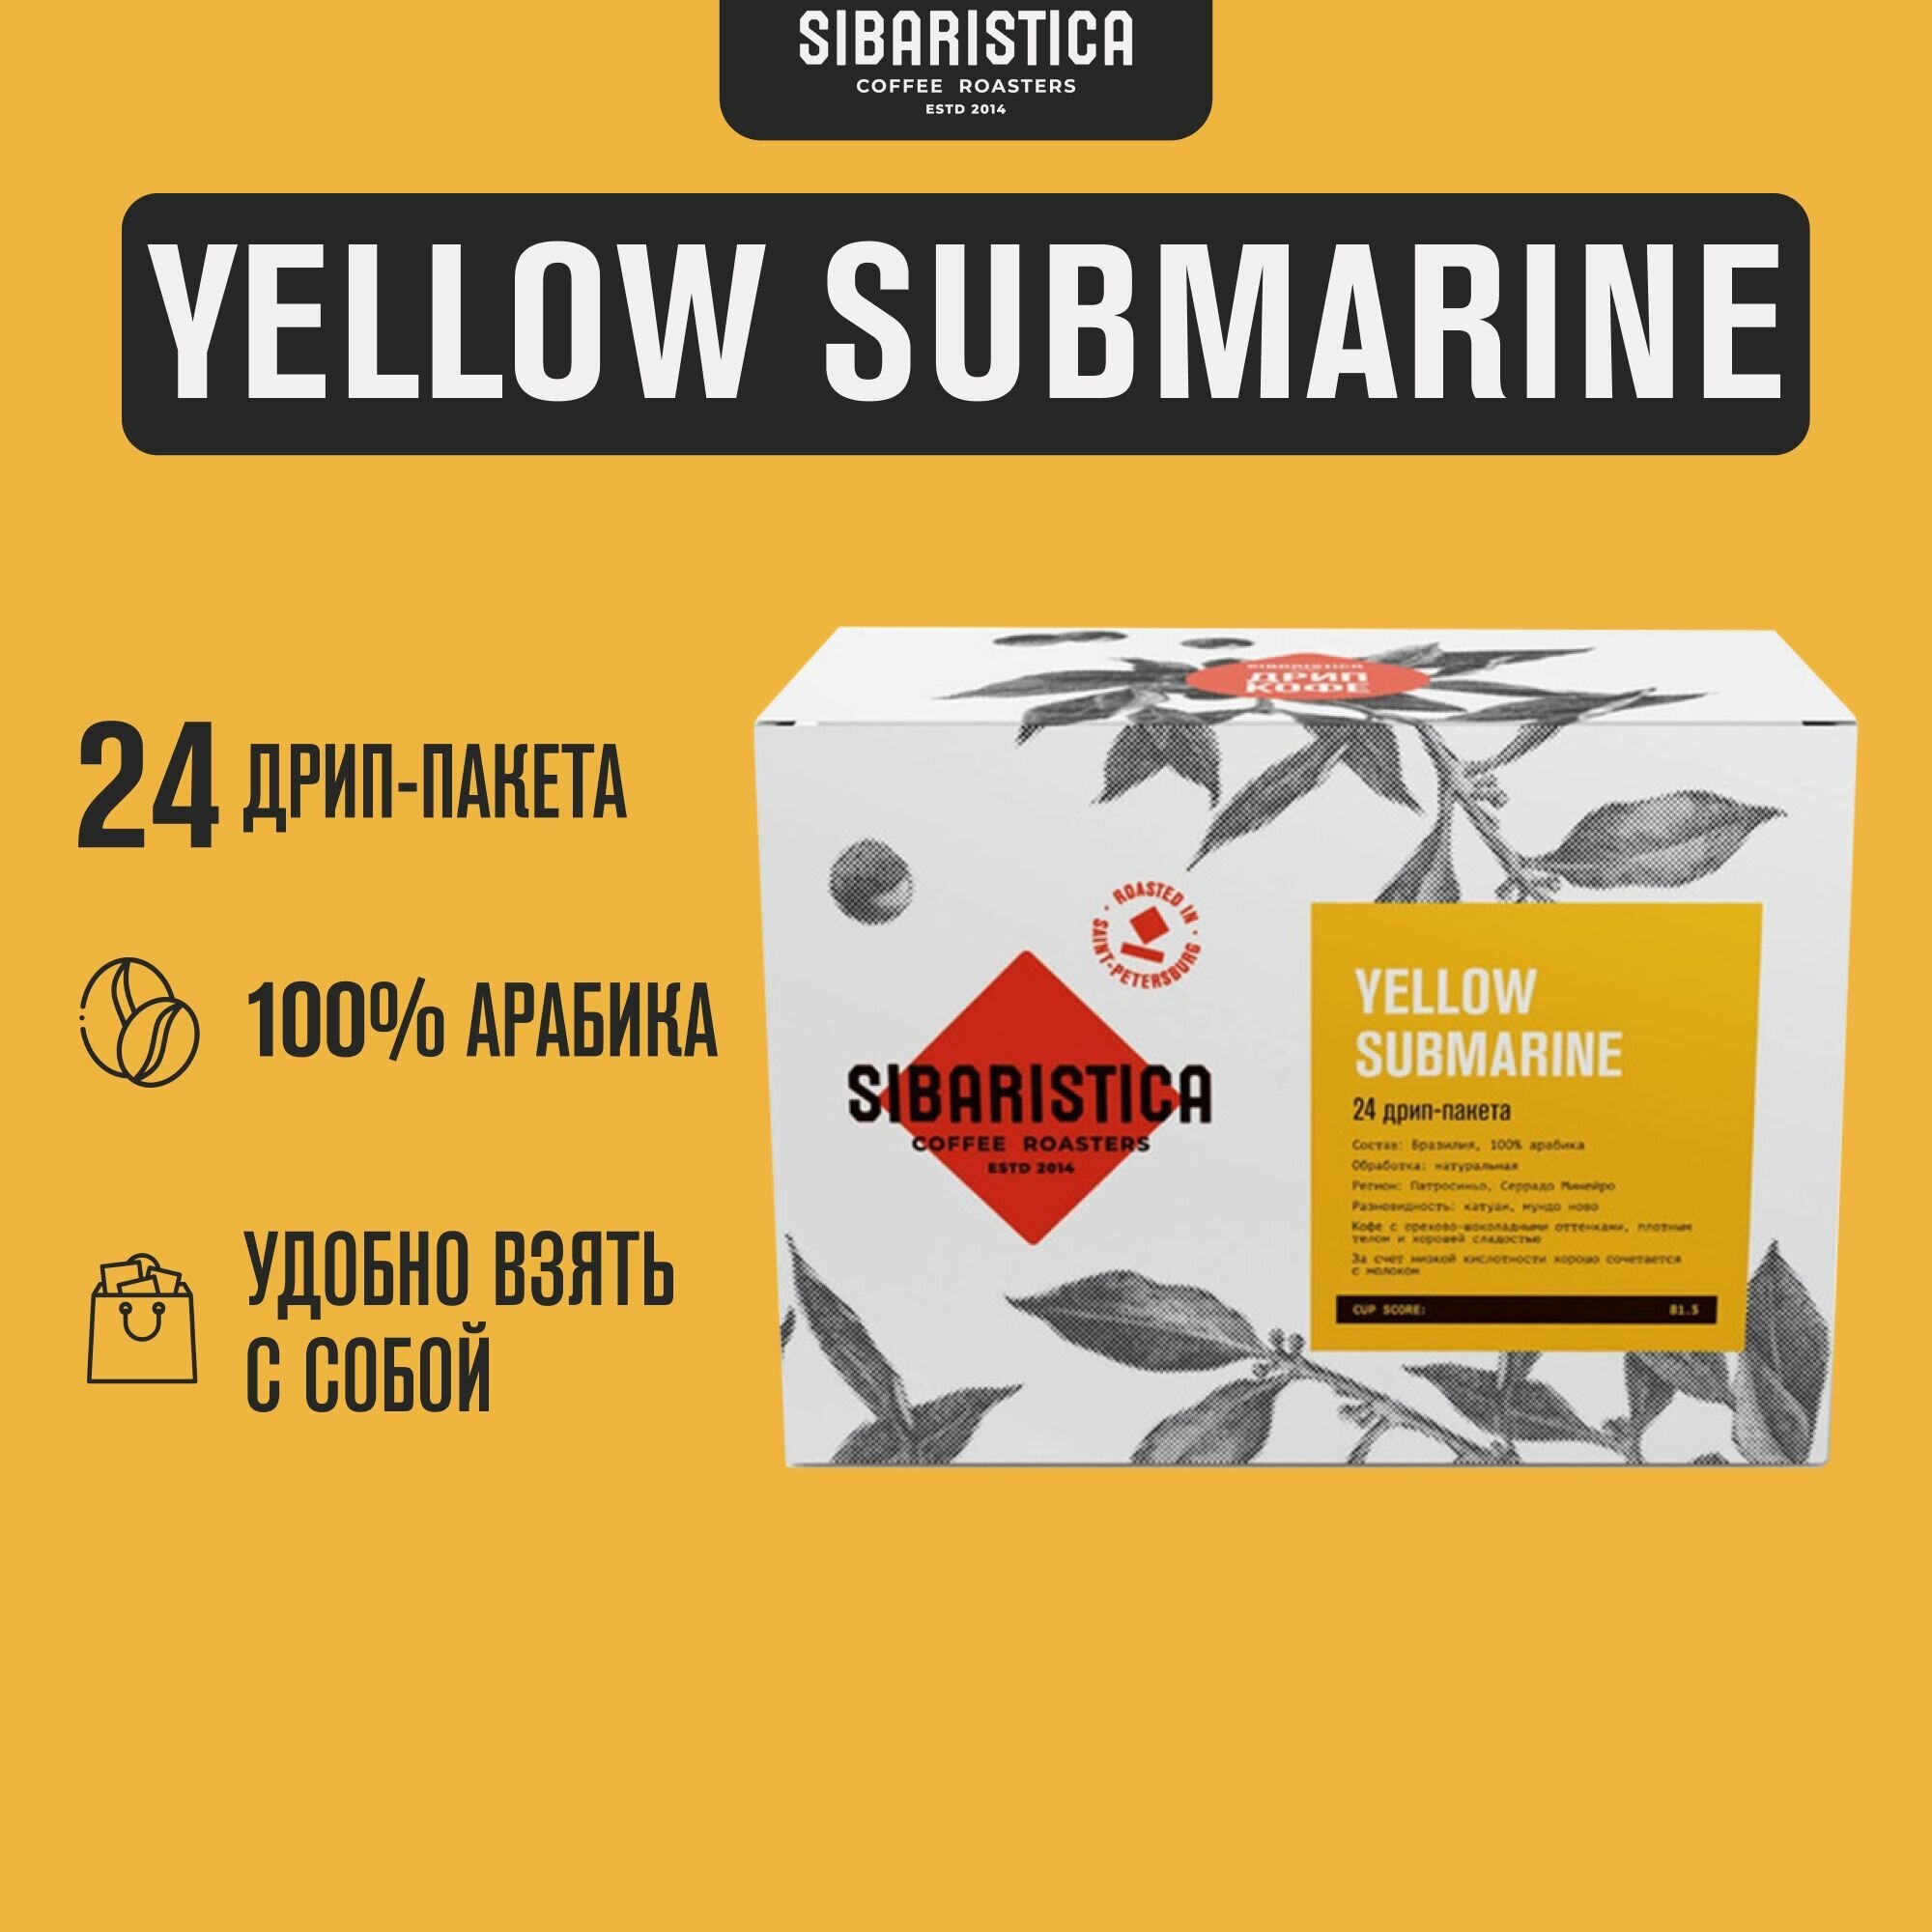 Дрип кофе Sibaristica Yellow Submarine, Бразилия (Молотый кофе в дрип-пакетах) 24шт*10гр